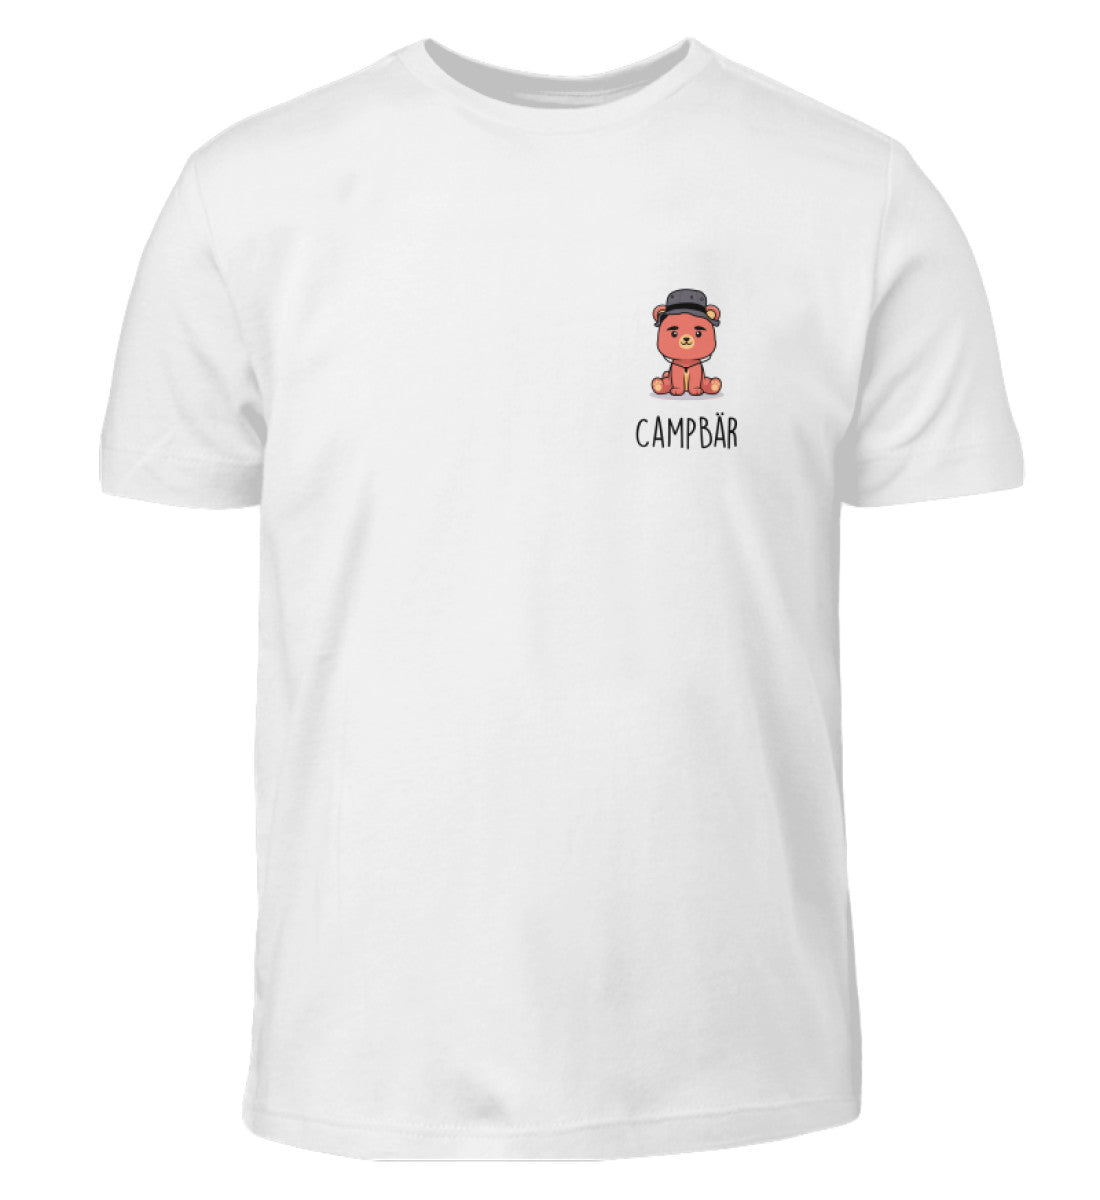 Campbär  - Kinder T-Shirt